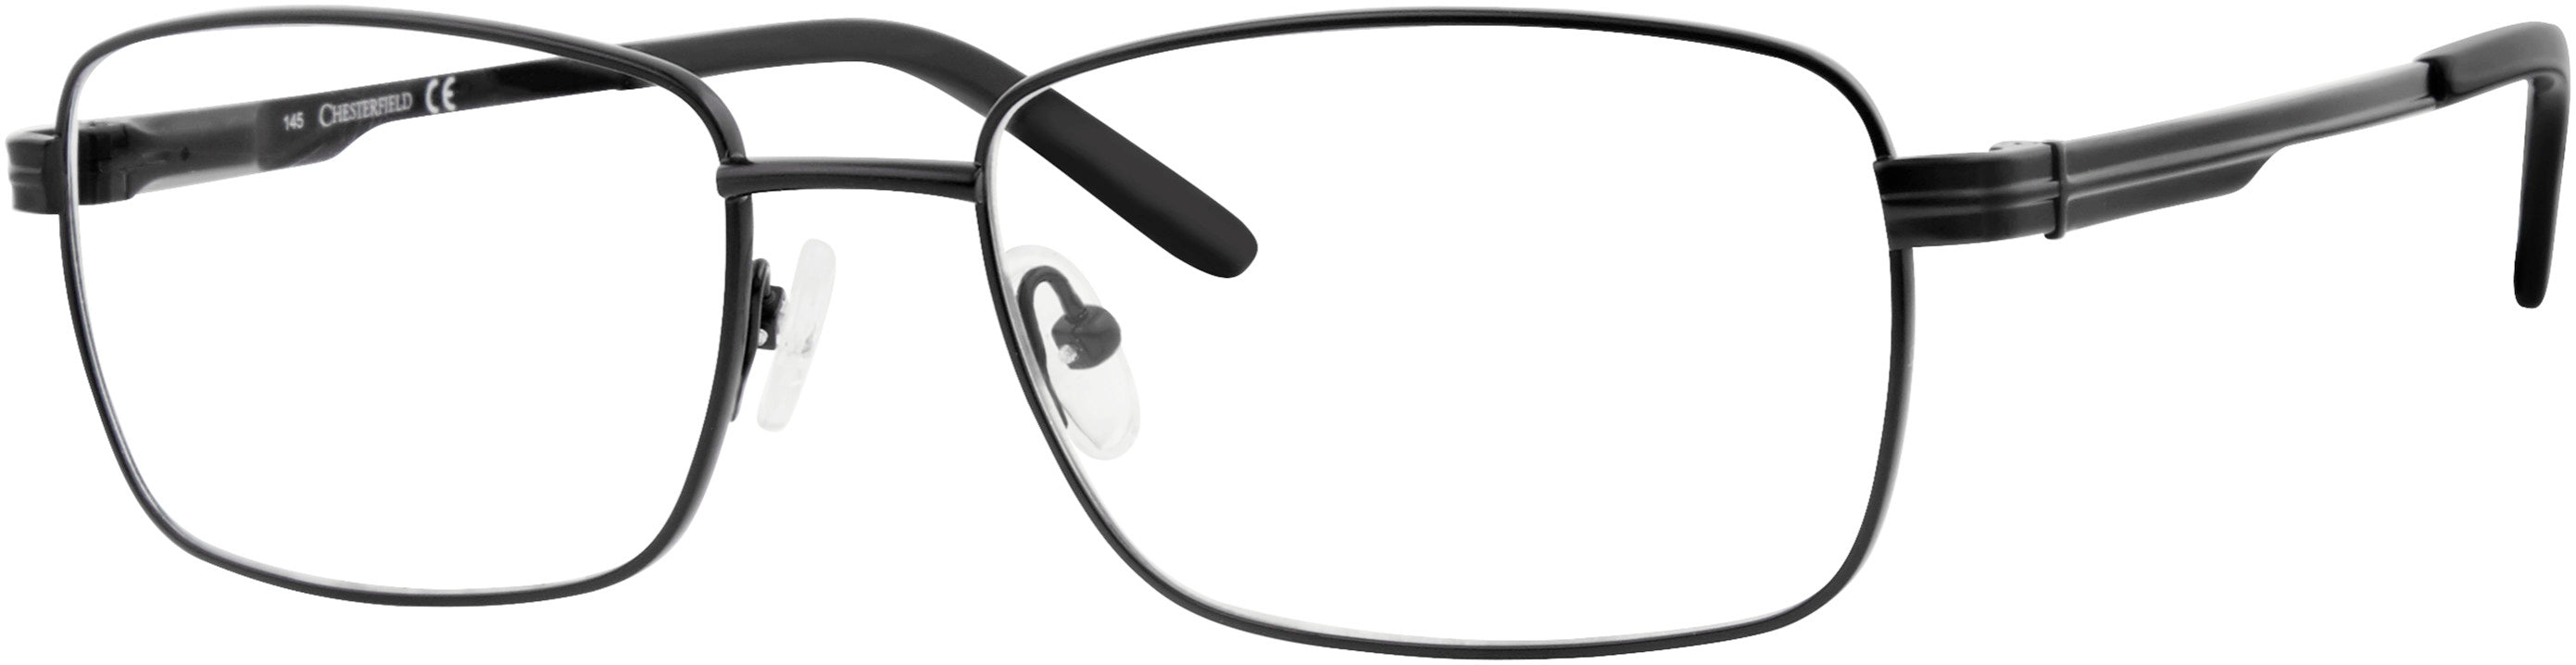  Chesterfield 887/T Rectangular Eyeglasses 0003-0003  Matte Black (00 Demo Lens)